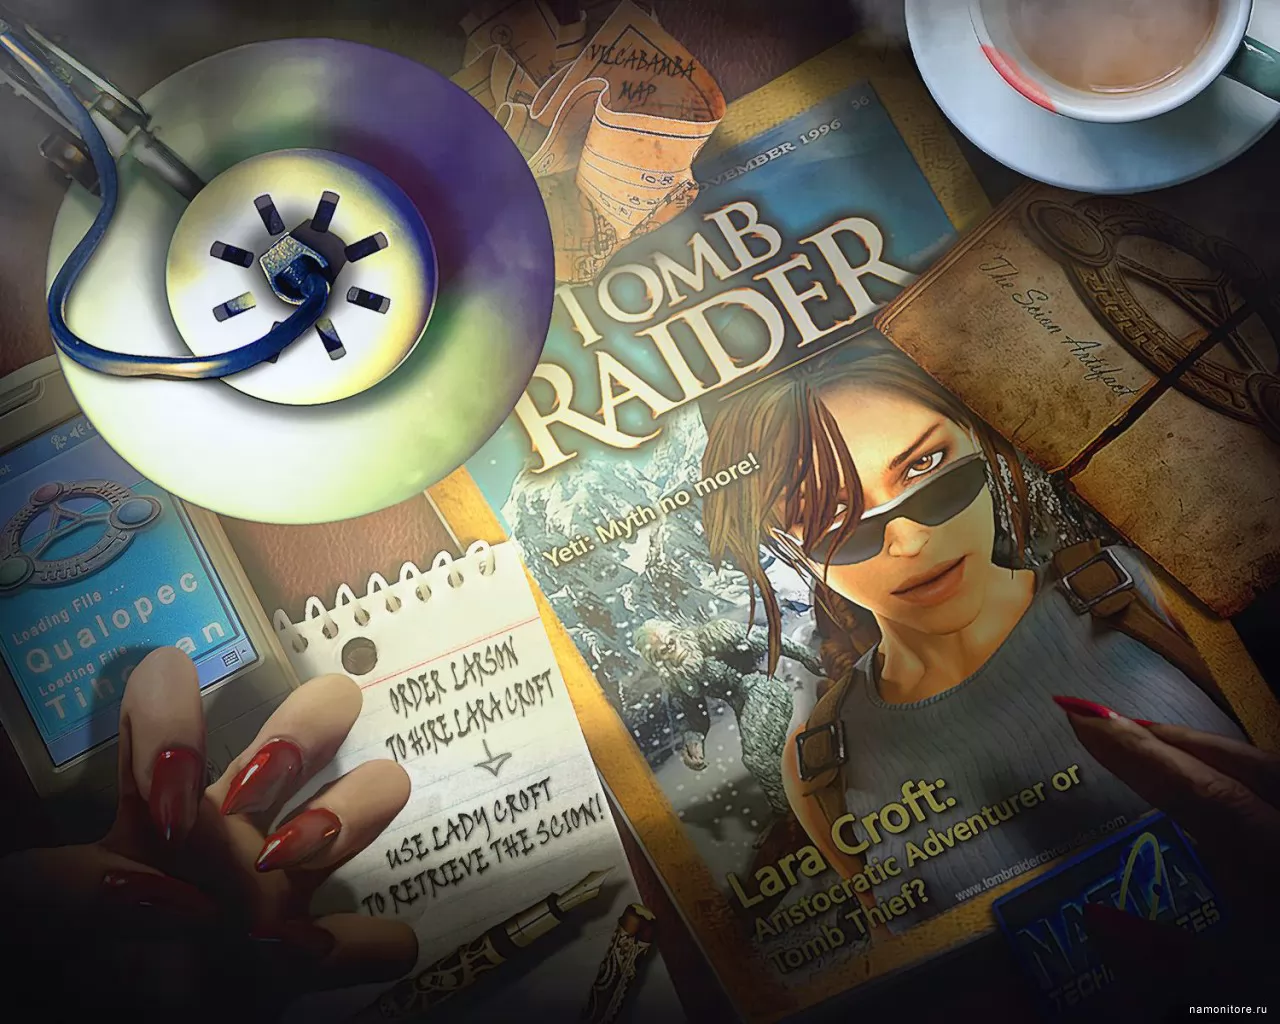 Tomb Raider: Underworld,   